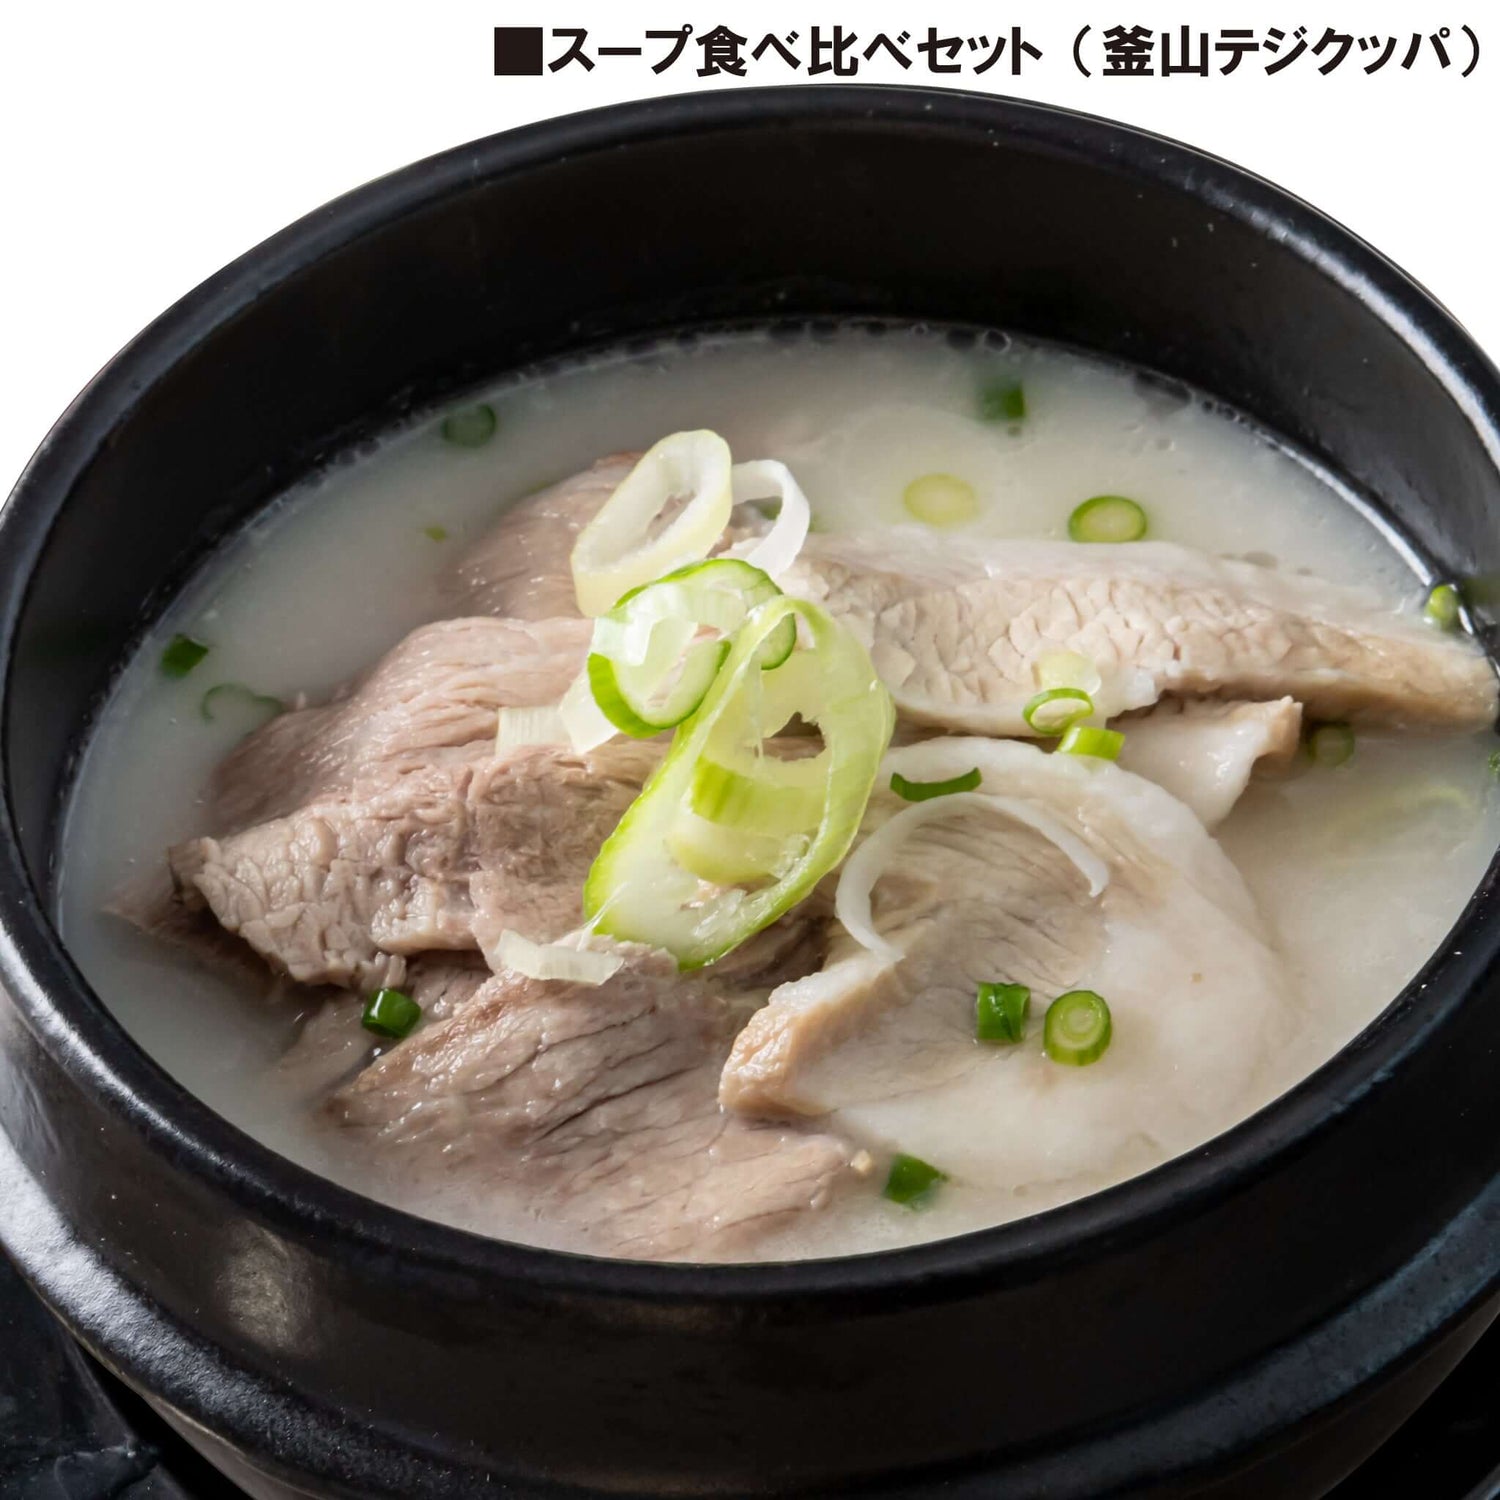 スープ食べ比べセット - 韓国惣菜bibim'ネットストア